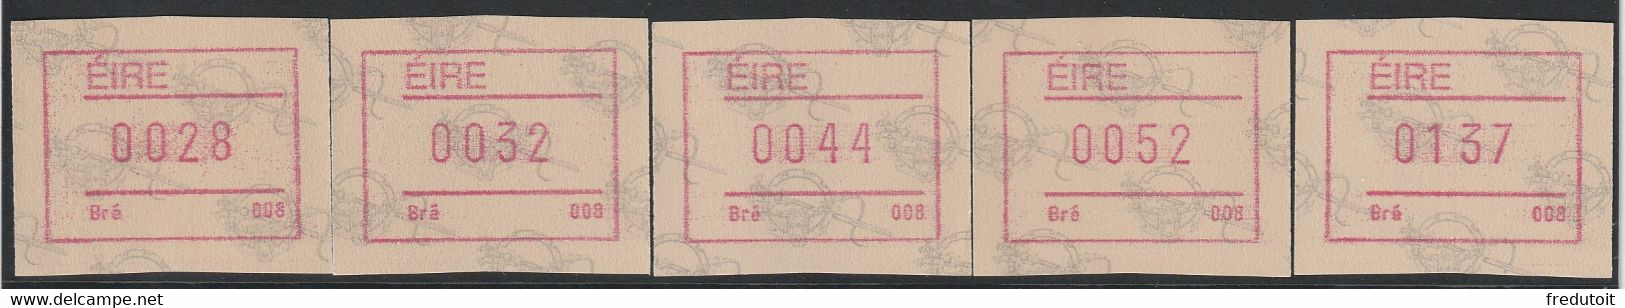 IRLANDE - Timbres Distributeurs / FRAMA  ATM - N°4** (1992) Bré 008 - Vignettes D'affranchissement (Frama)